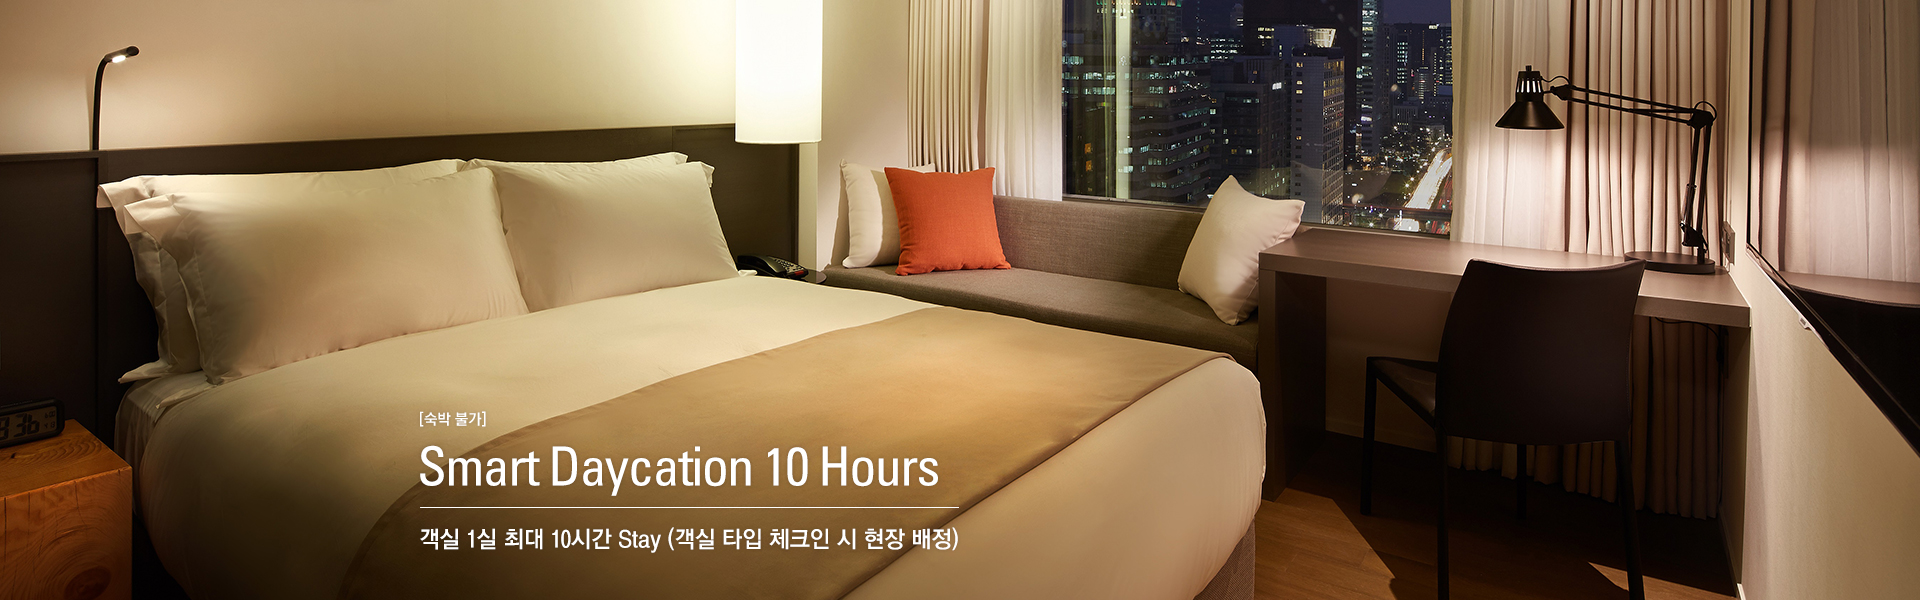 [숙박 불가] Smart Daycation 10 Hours